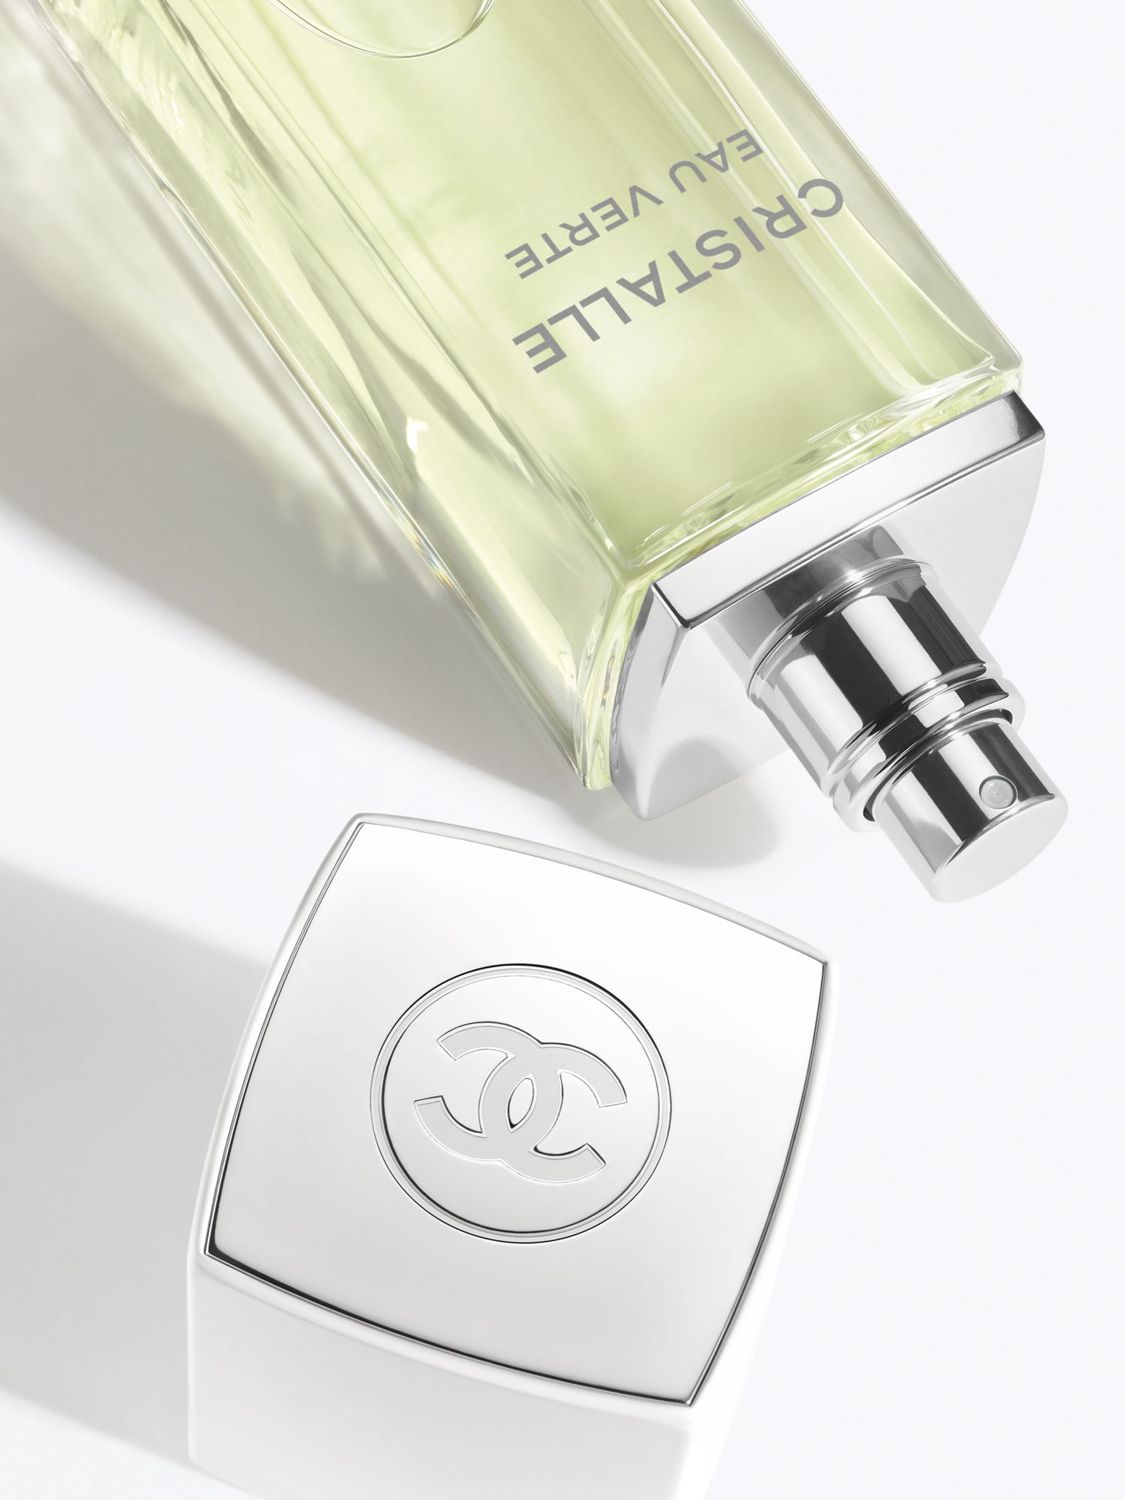 Chanel Cristalle Eau Verte - Eau De Parfum Spray 100ml